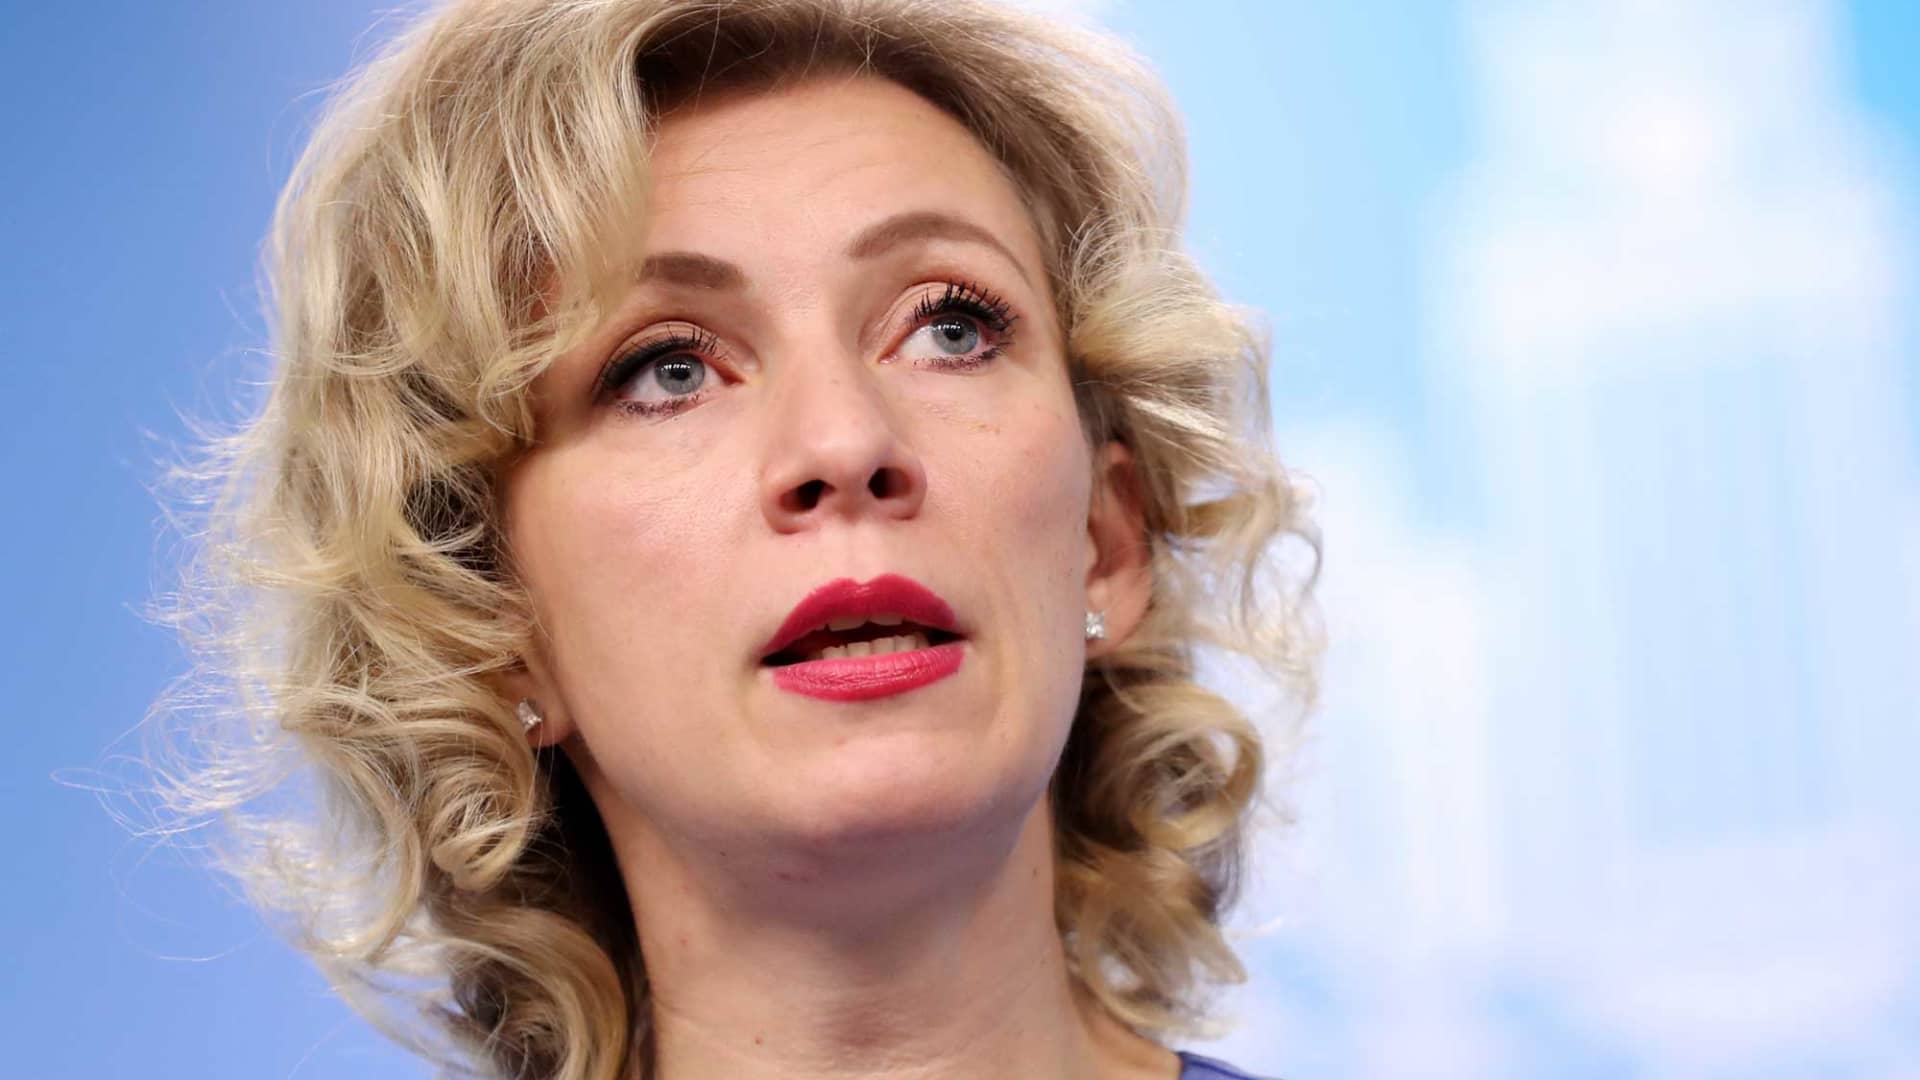 Russia's Foreign Ministry Spokesperson Maria Zakharova